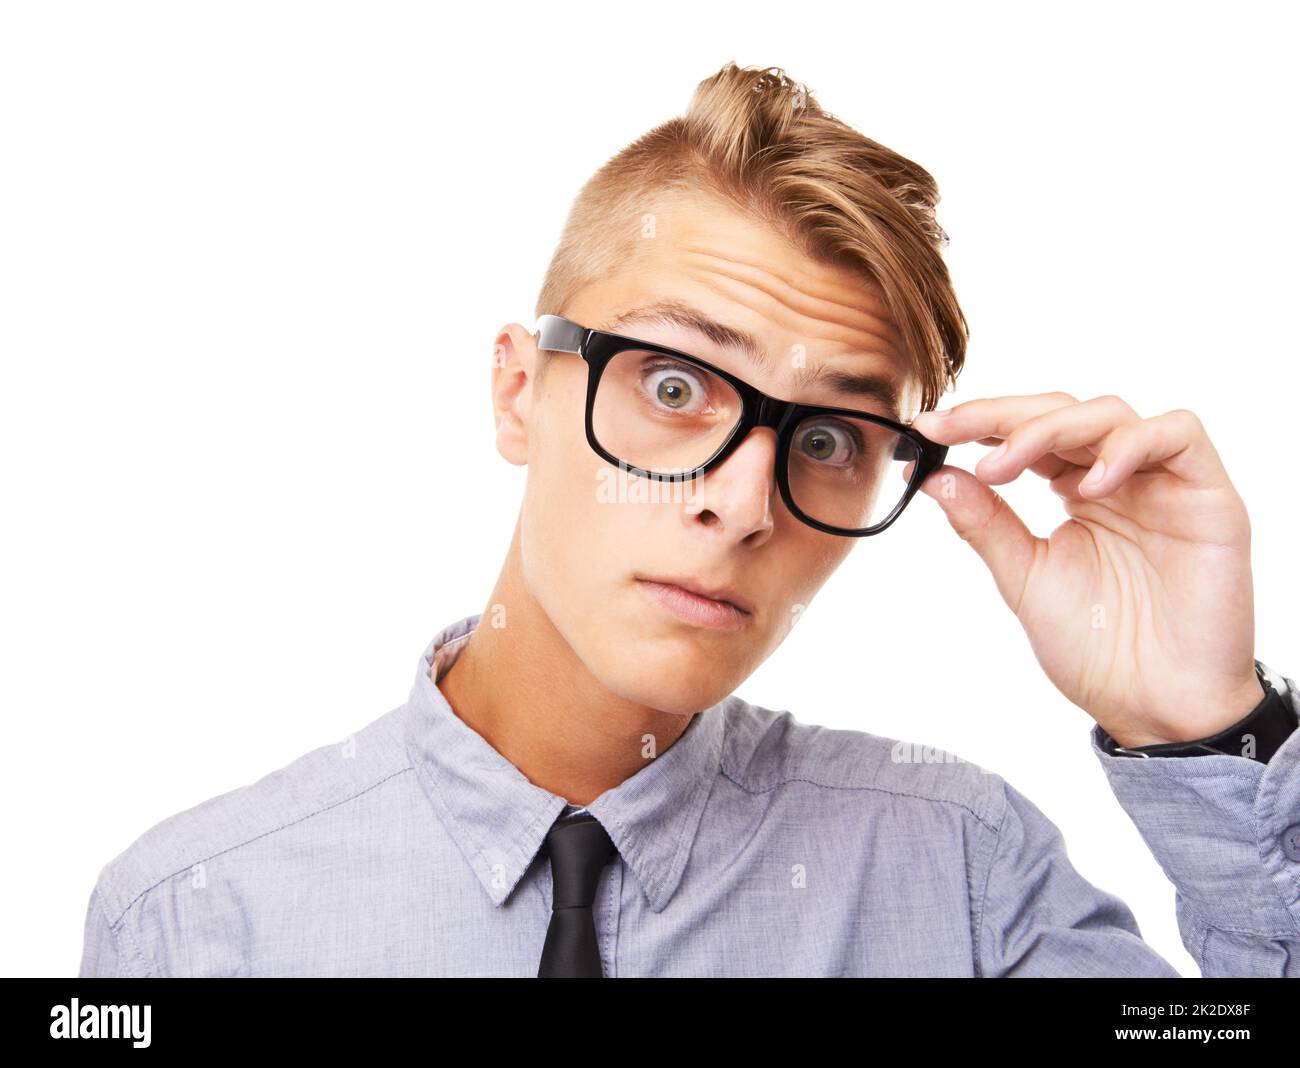 Ihr Stil ist schockierend. Studioporträt eines ausdrucksstarken jungen Mannes, der eine auf Weiß isolierte Brille trägt. Stockfoto